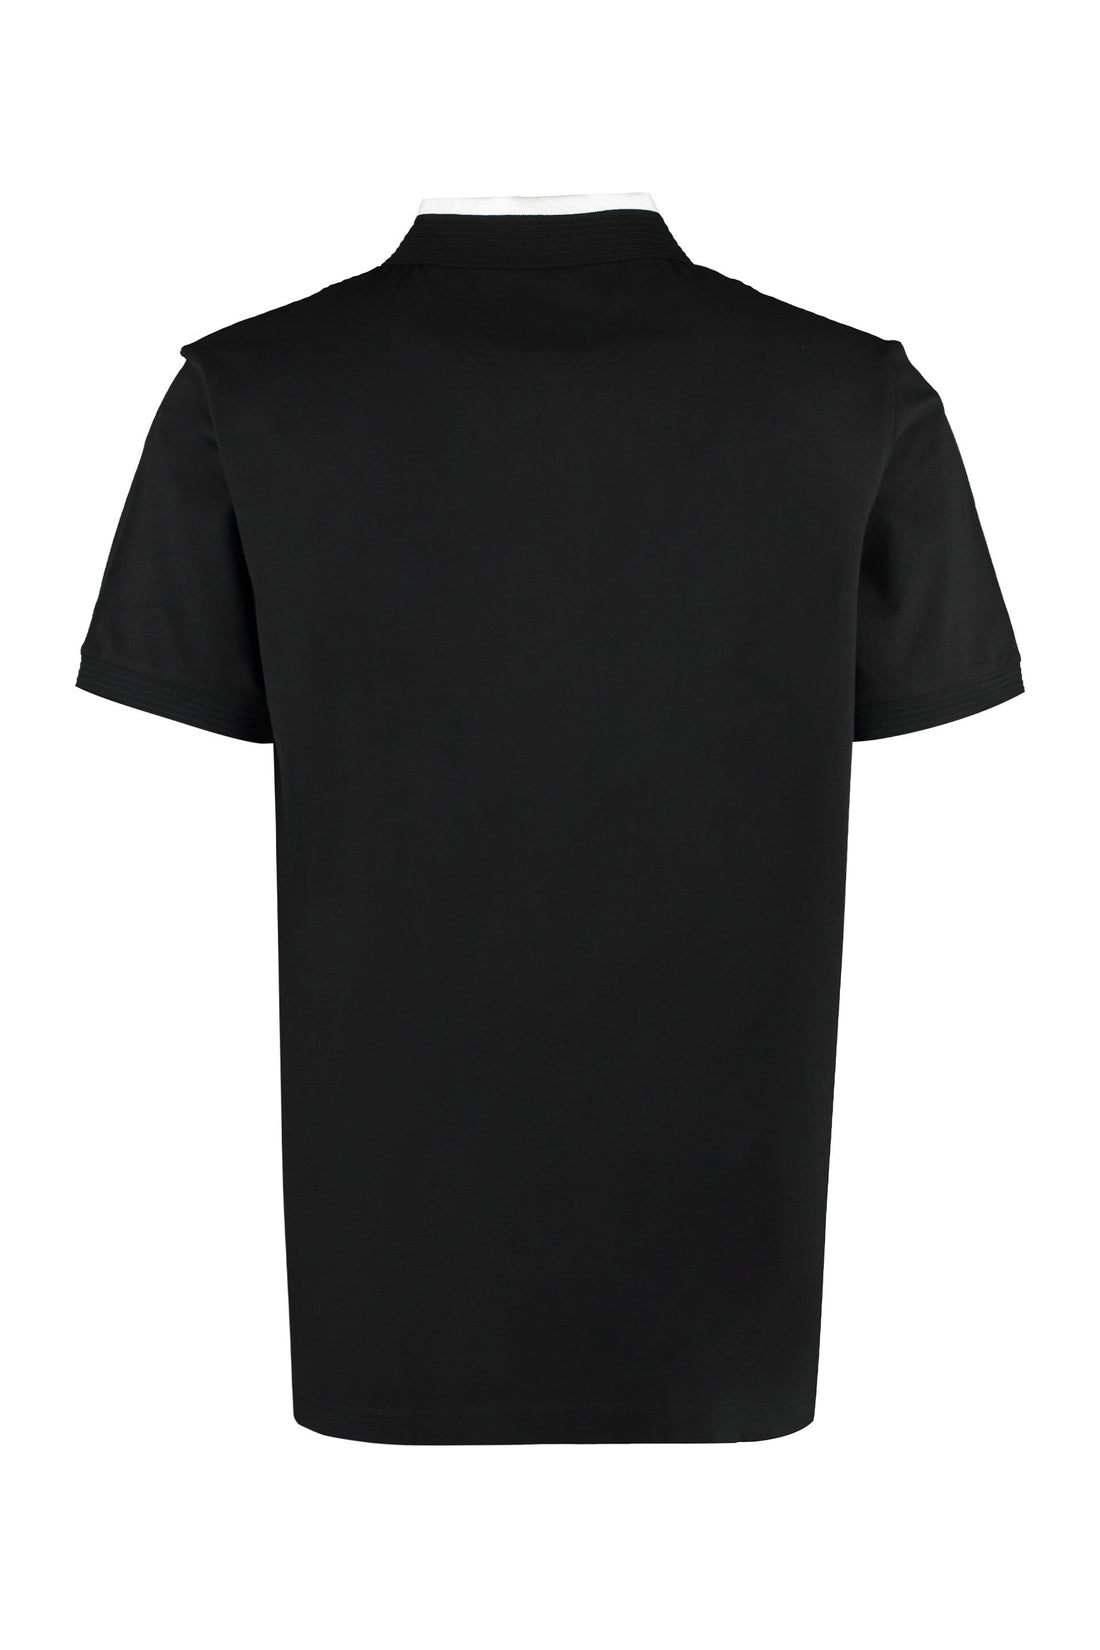 BOSS-OUTLET-SALE-Cotton jersey polo shirt-ARCHIVIST